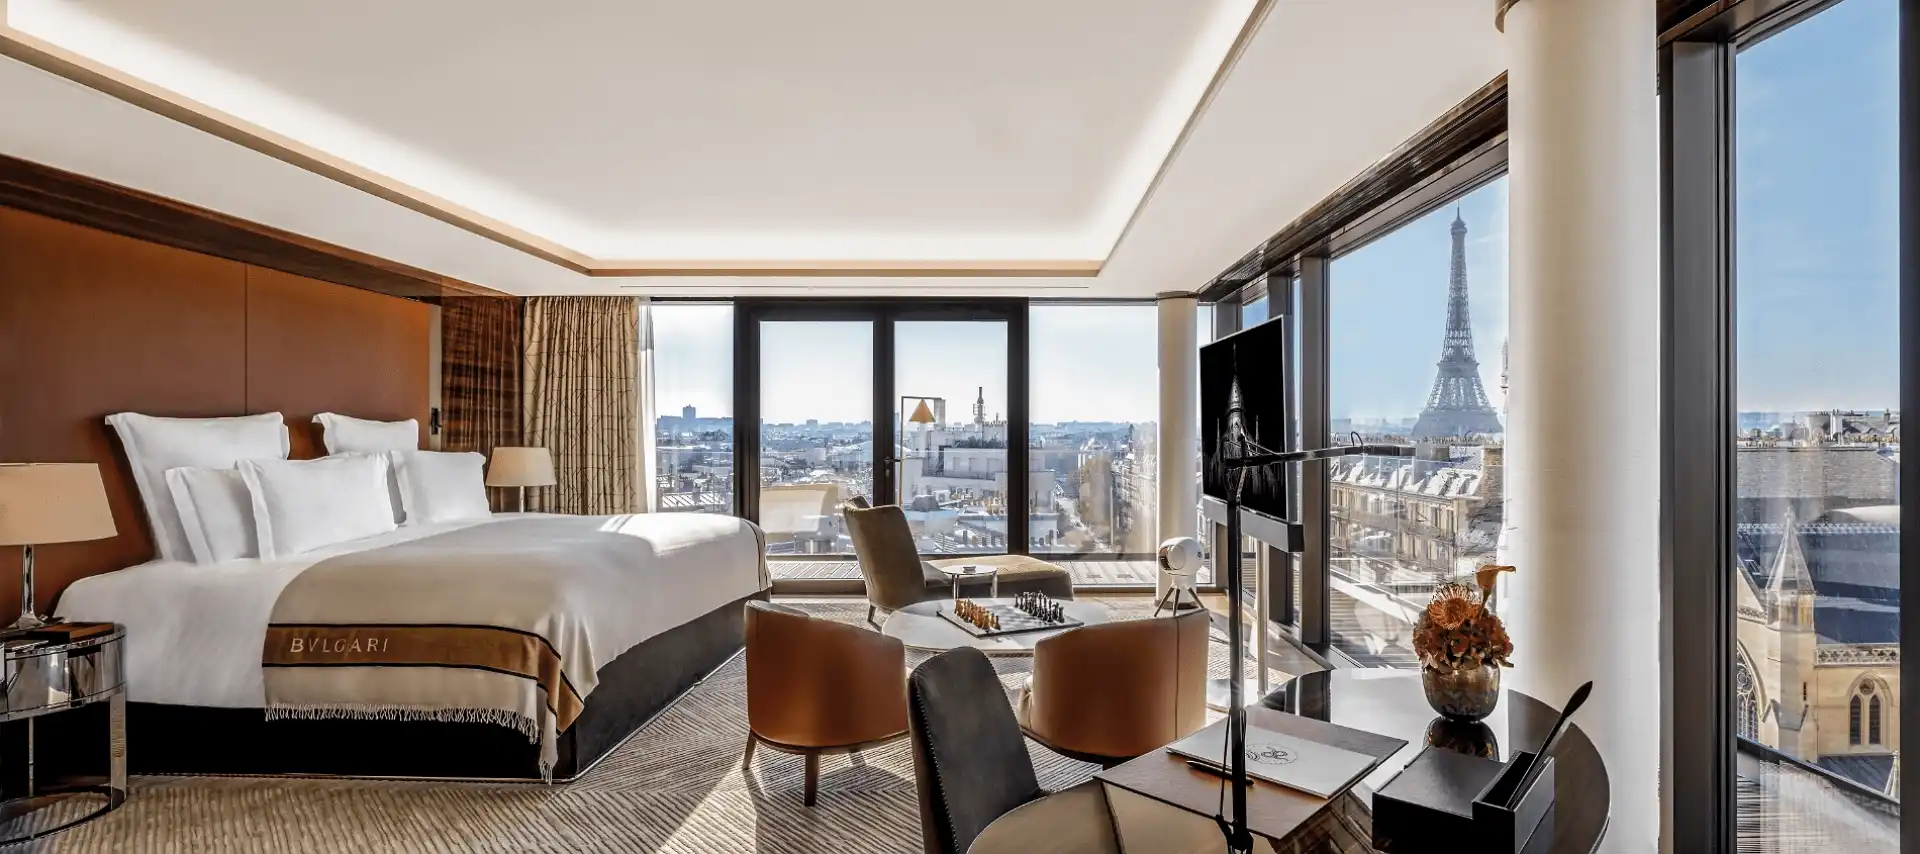 Al estilo francés: así es el nuevo Bulgari Hotel de París